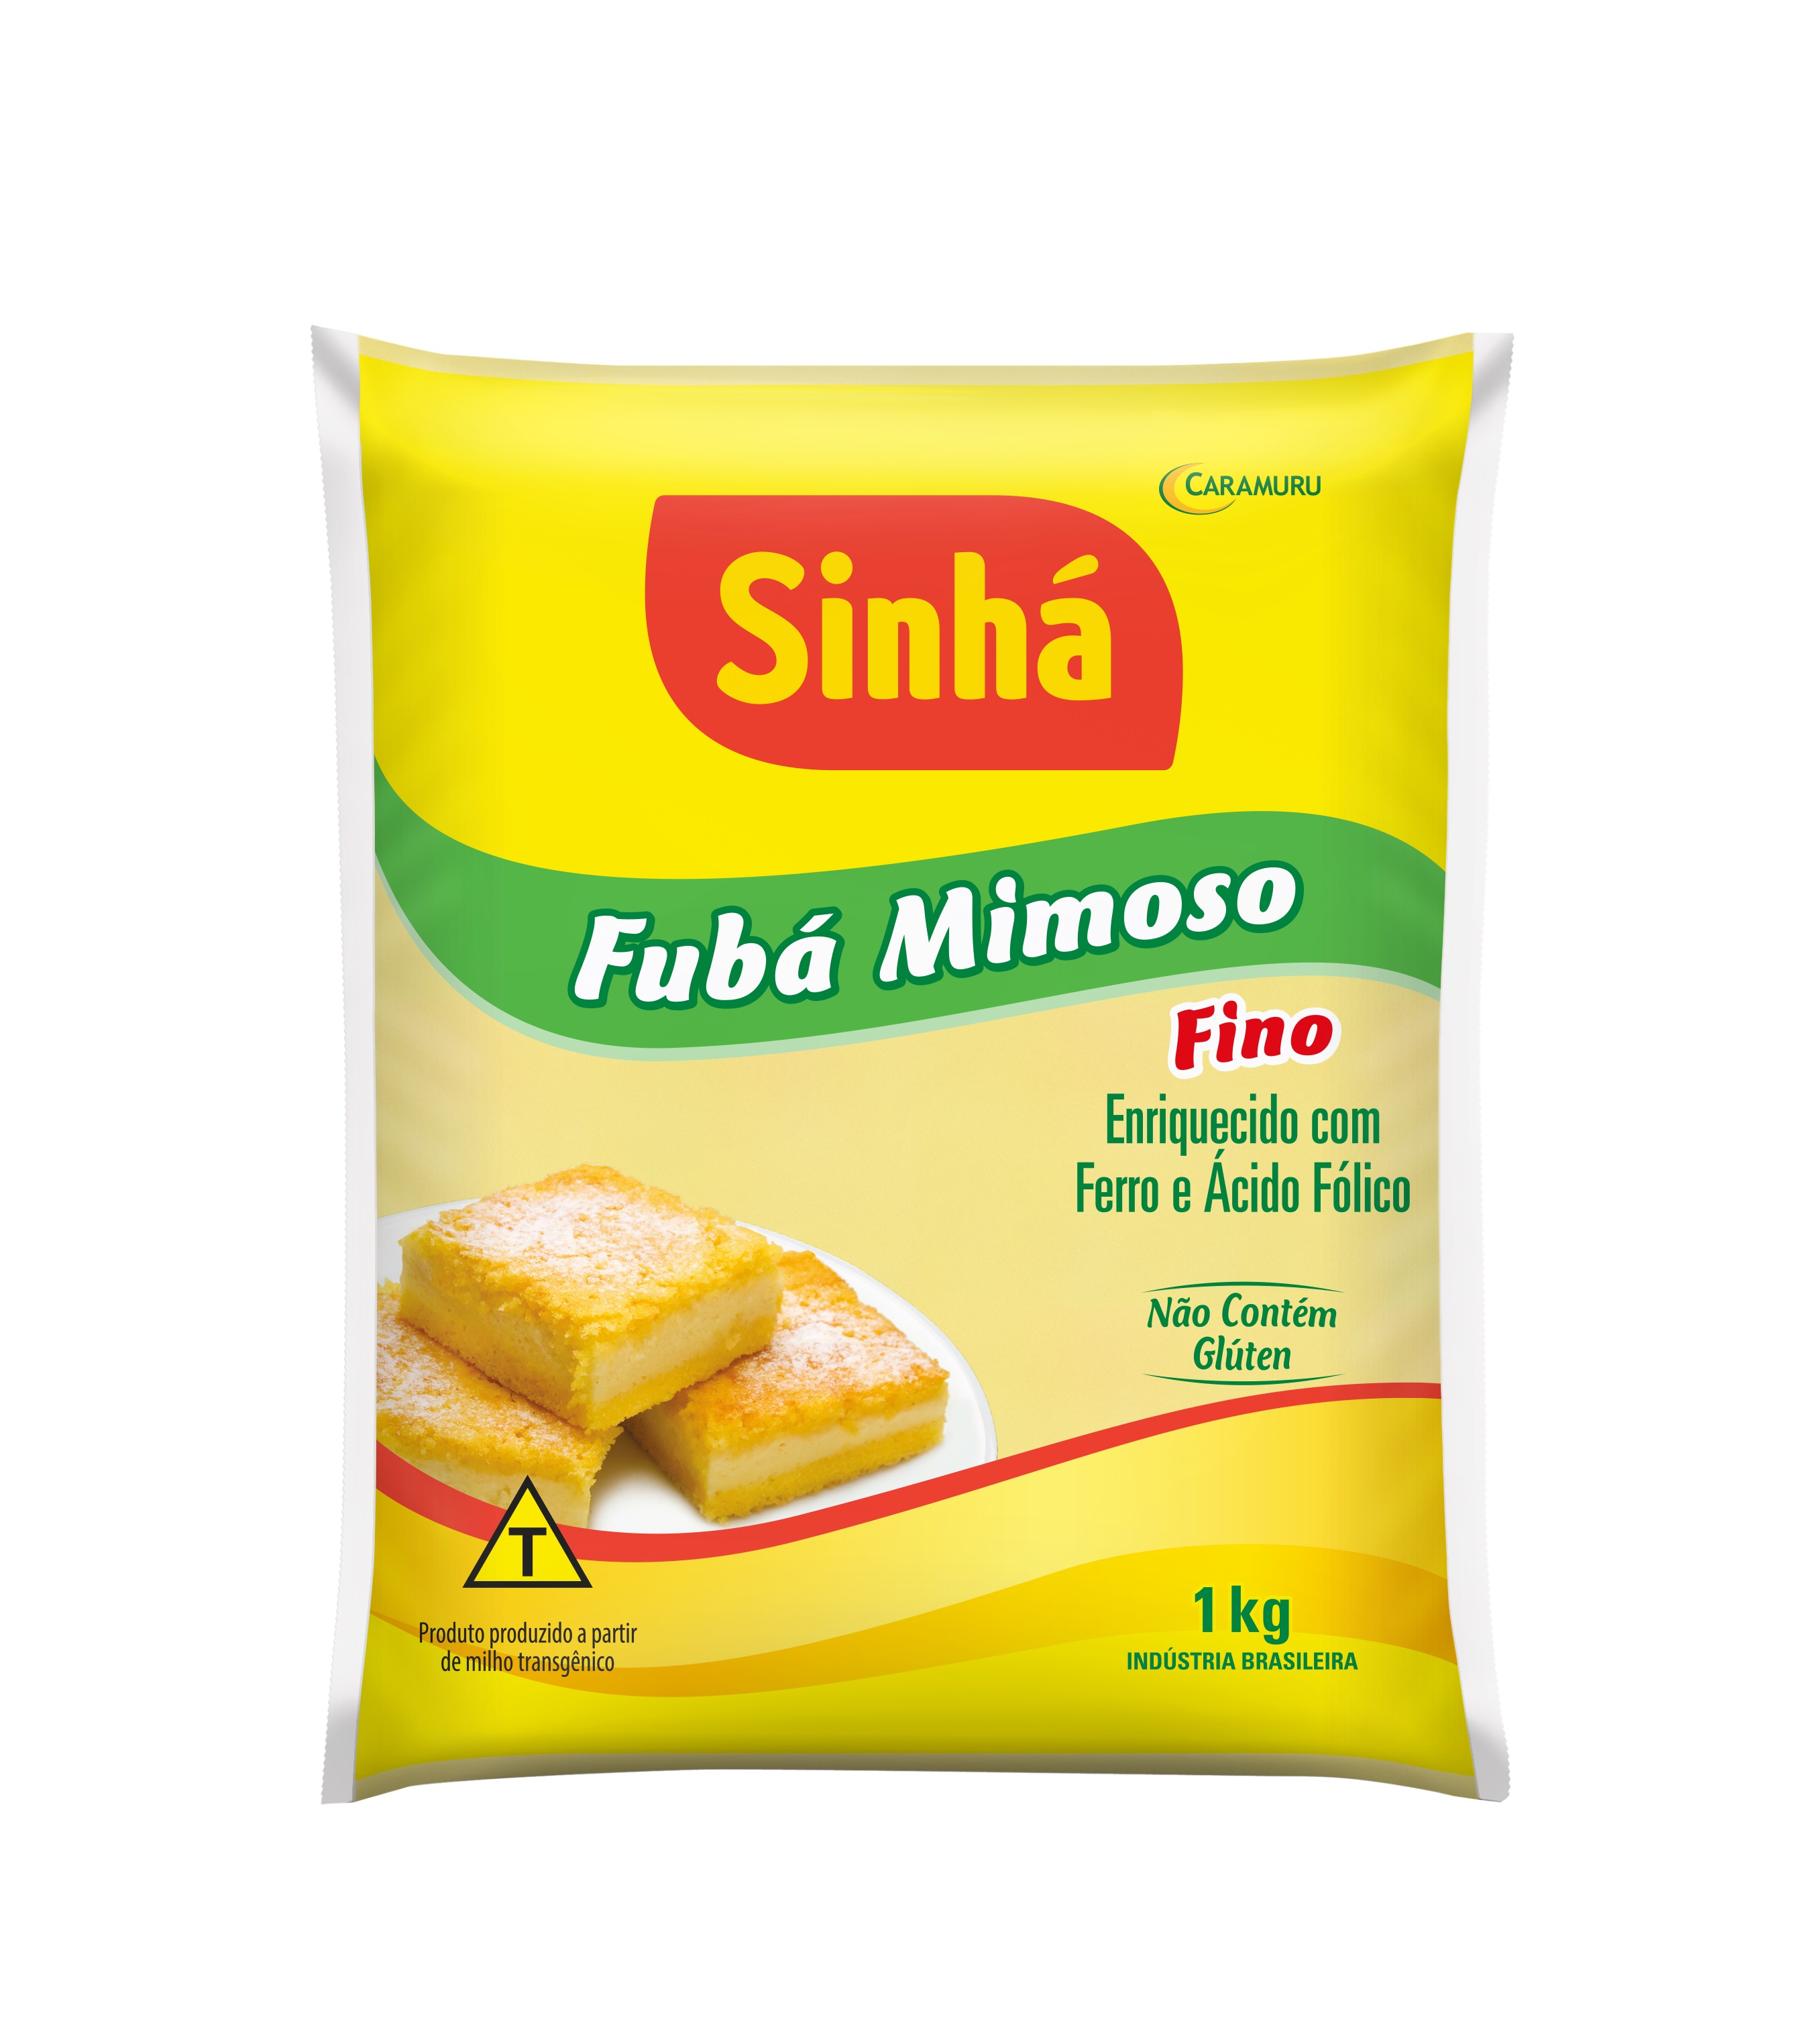 Fubá Mimoso Fino Sinhá 1kg